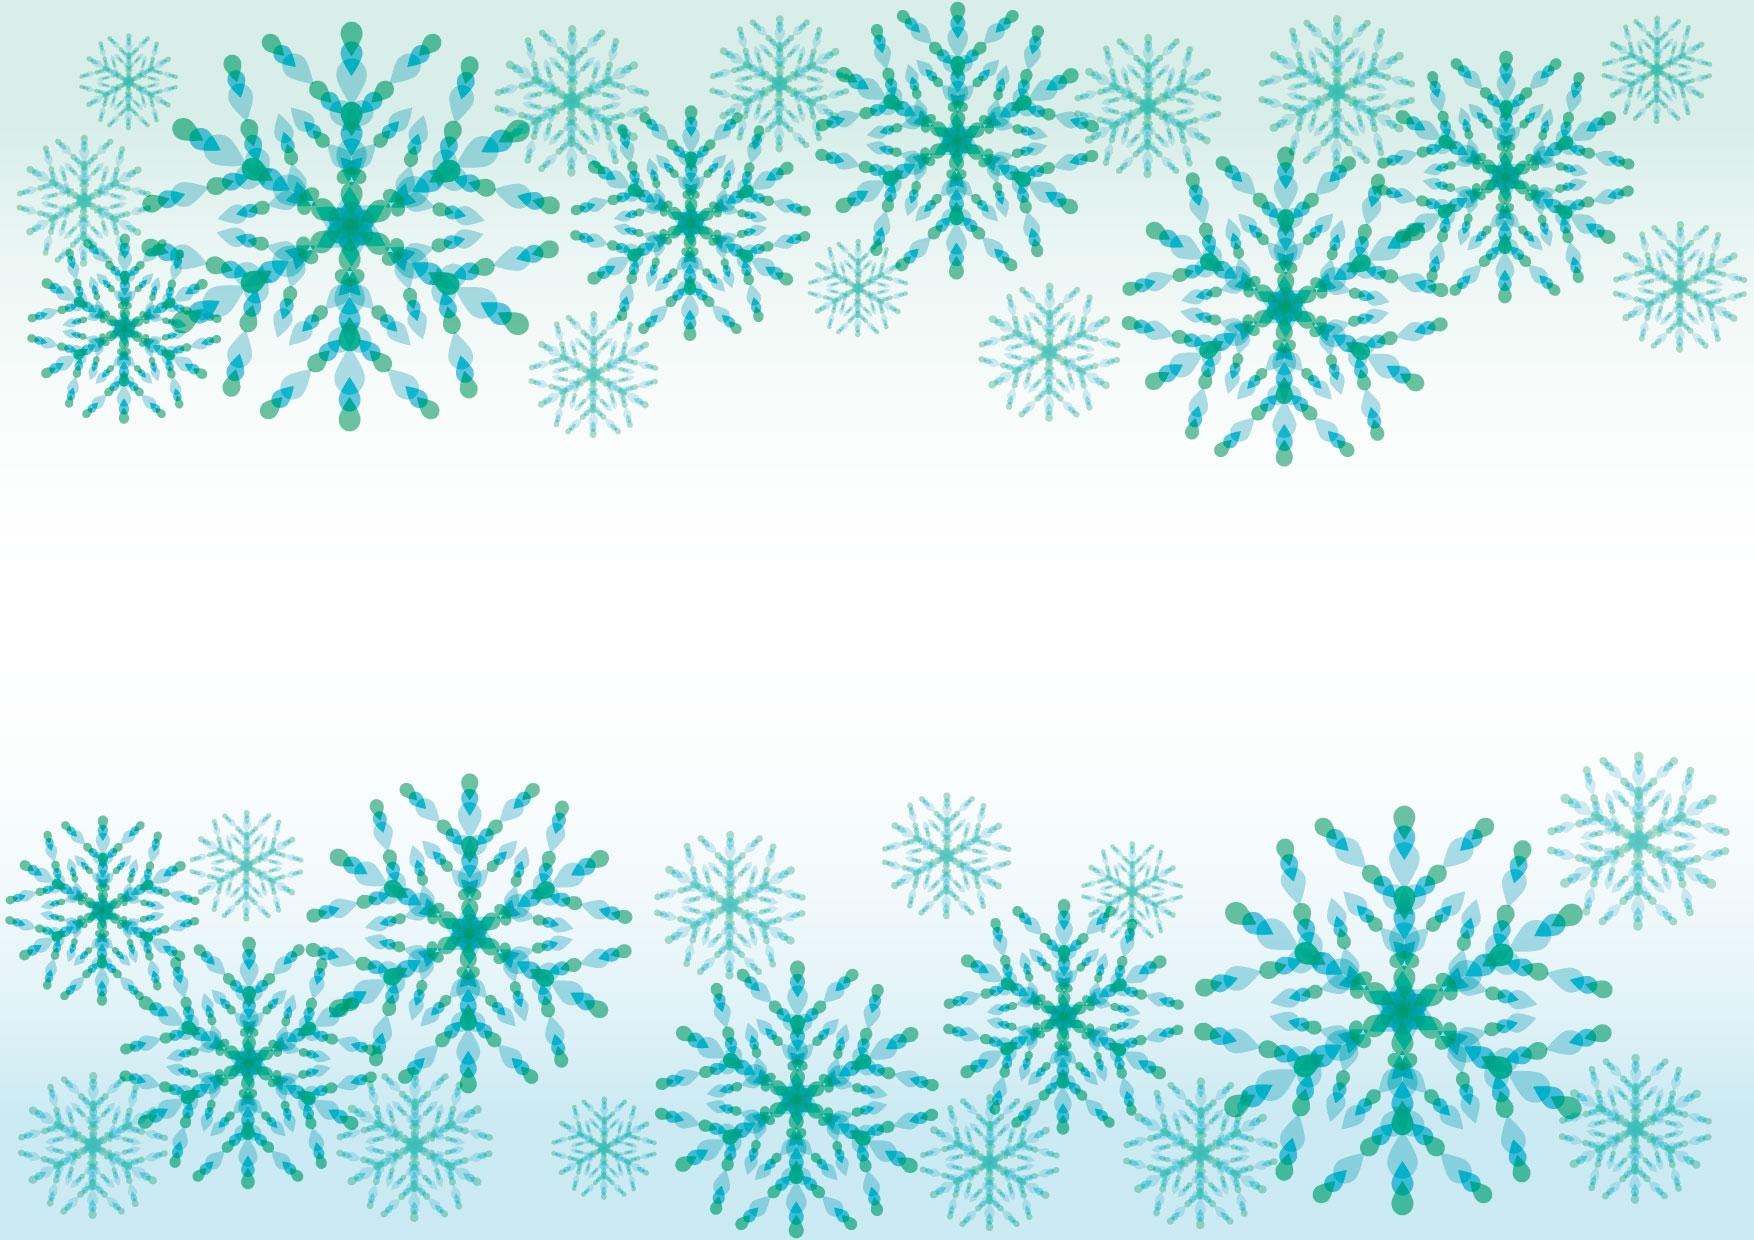 可愛いイラスト無料 雪の結晶 青 背景 Free Illustration Snowflakes Blue Background 公式 イラスト 素材サイト イラストダウンロード